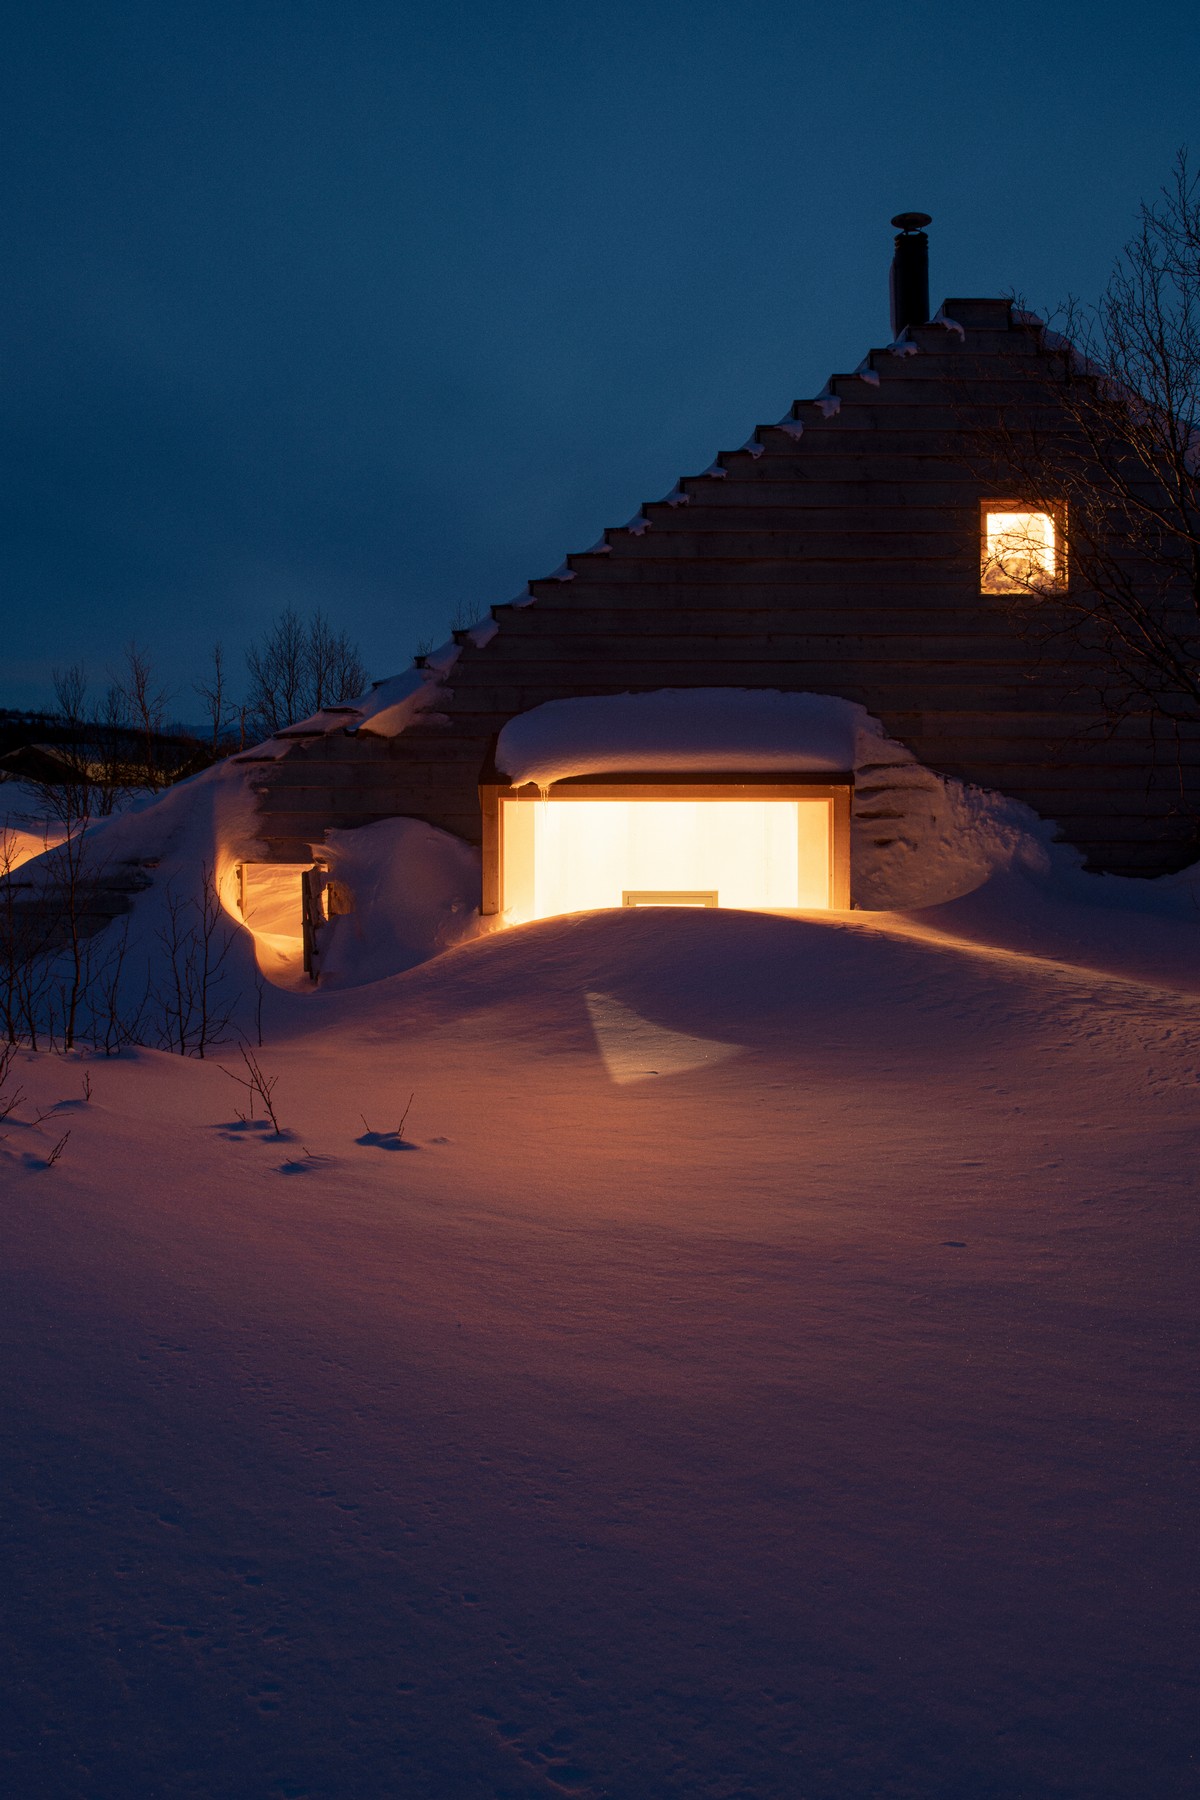 Необычный деревянный дачный дом в Норвегии Thunder, Cabin, снега, метров, форма, который, Gartnerfuglen, хижины, когда, Хардангервидды, Норвегии, крыше, домика, использовать, может, Arkitekter, качестве, использования, семье, всего